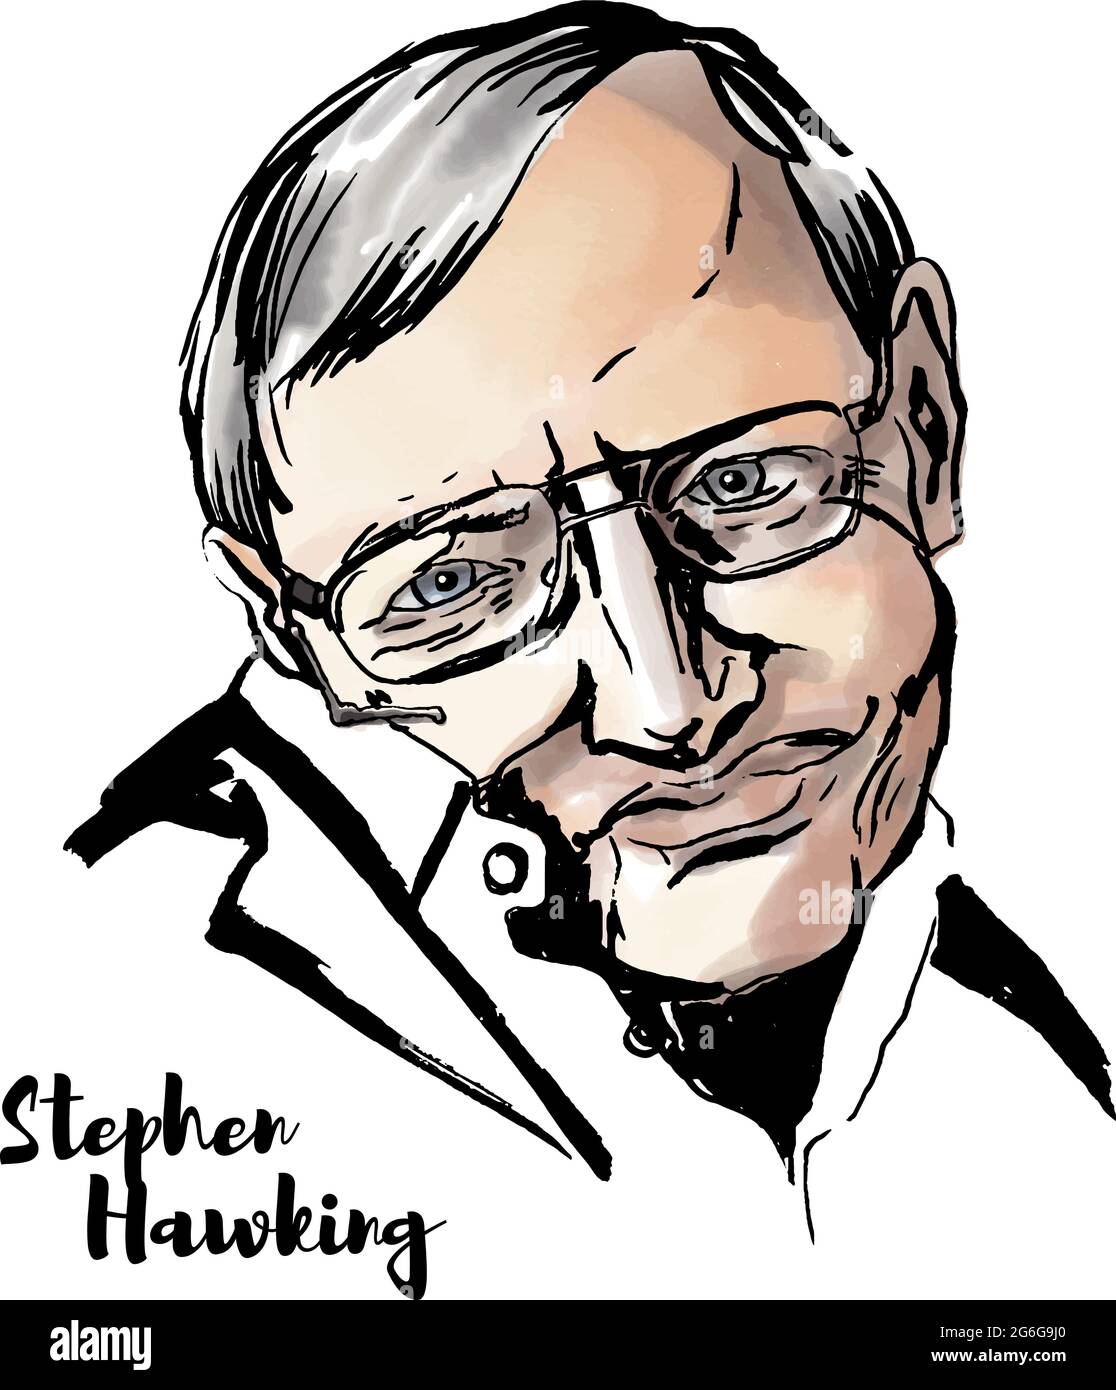 MOSKAU, RUSSLAND - 11. JUNI 2018: Stephen Hawking Aquarell-Vektorportrait mit Farbkonturen. Englischer theoretischer Physiker, Kosmologe und Autor o Stock Vektor